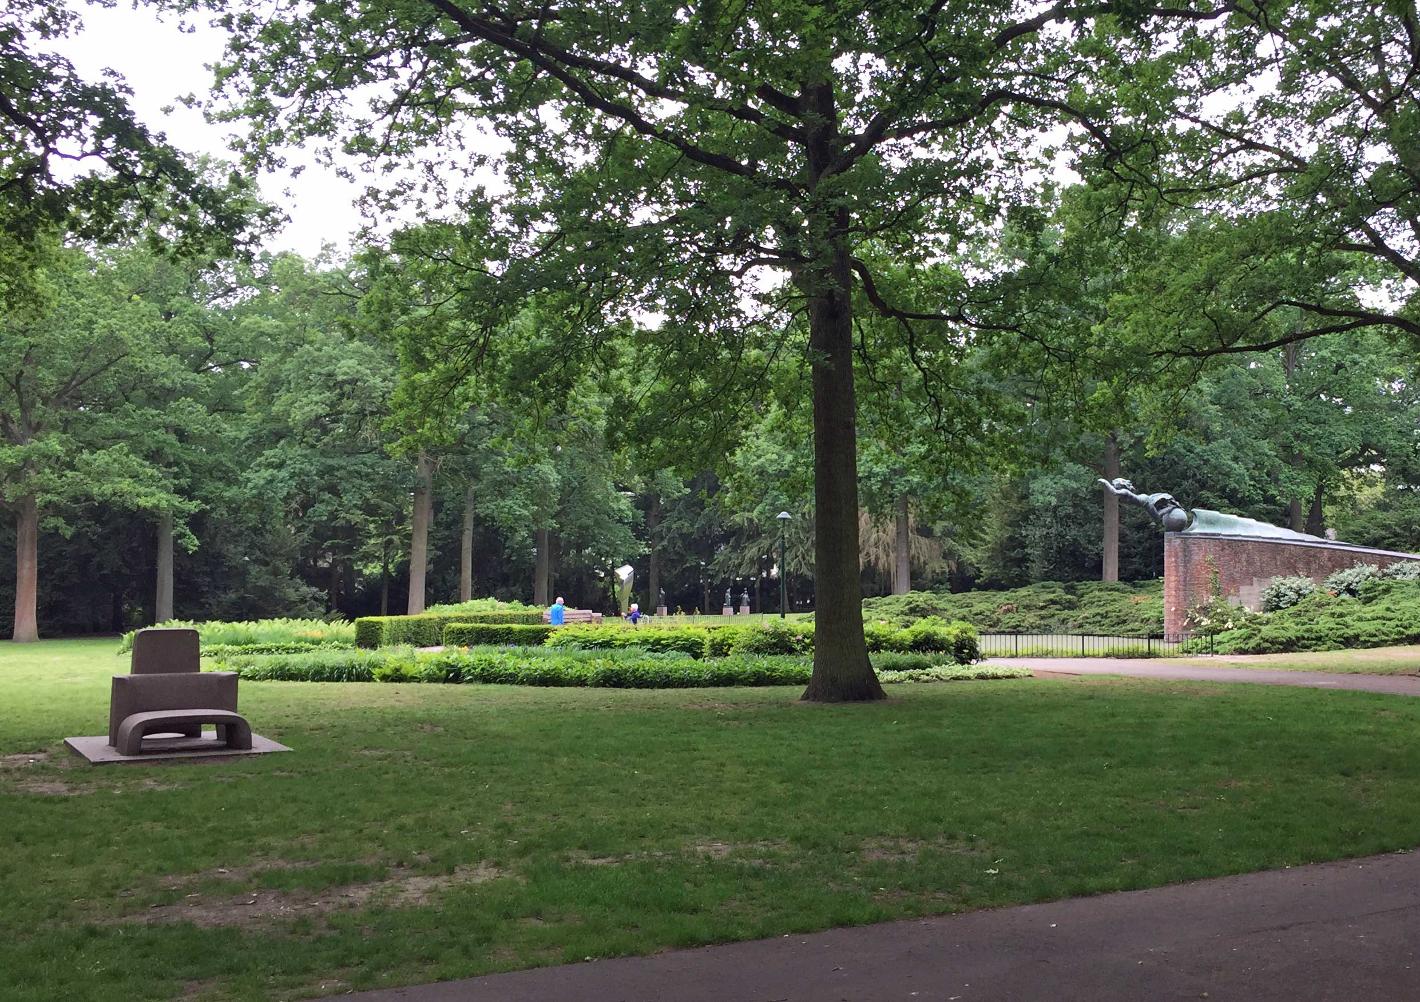 Foto Stadswandelpark in Eindhoven, Zien, Bezienswaardigheden, Buurt, plein, park - #1